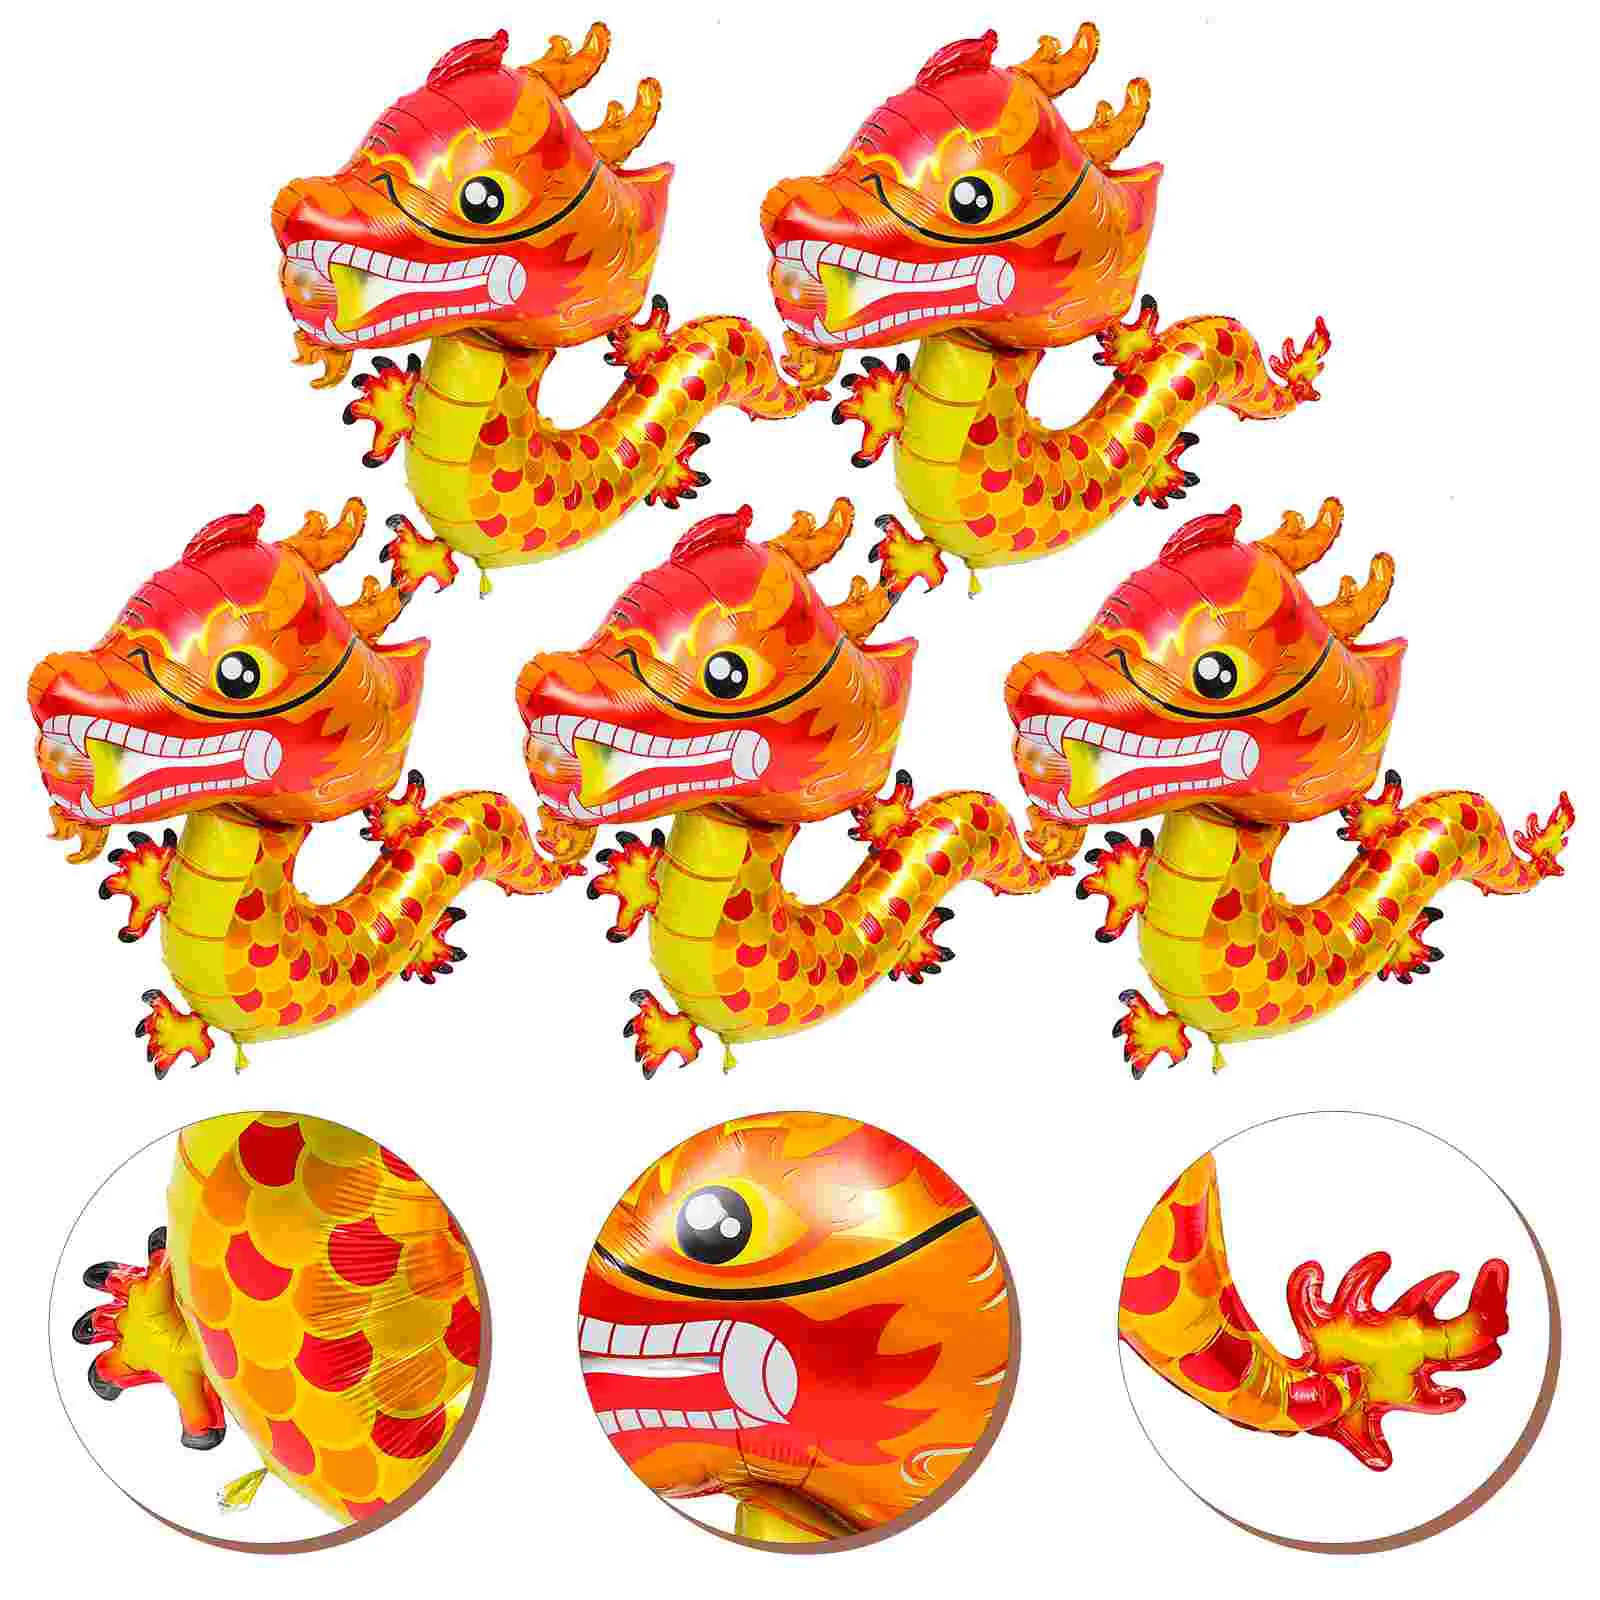 

5 шт. декоративные китайские весенние фотообои, новогодние воздушные шары с драконом, алюминиевая форма, украшения с мультяшным рисунком